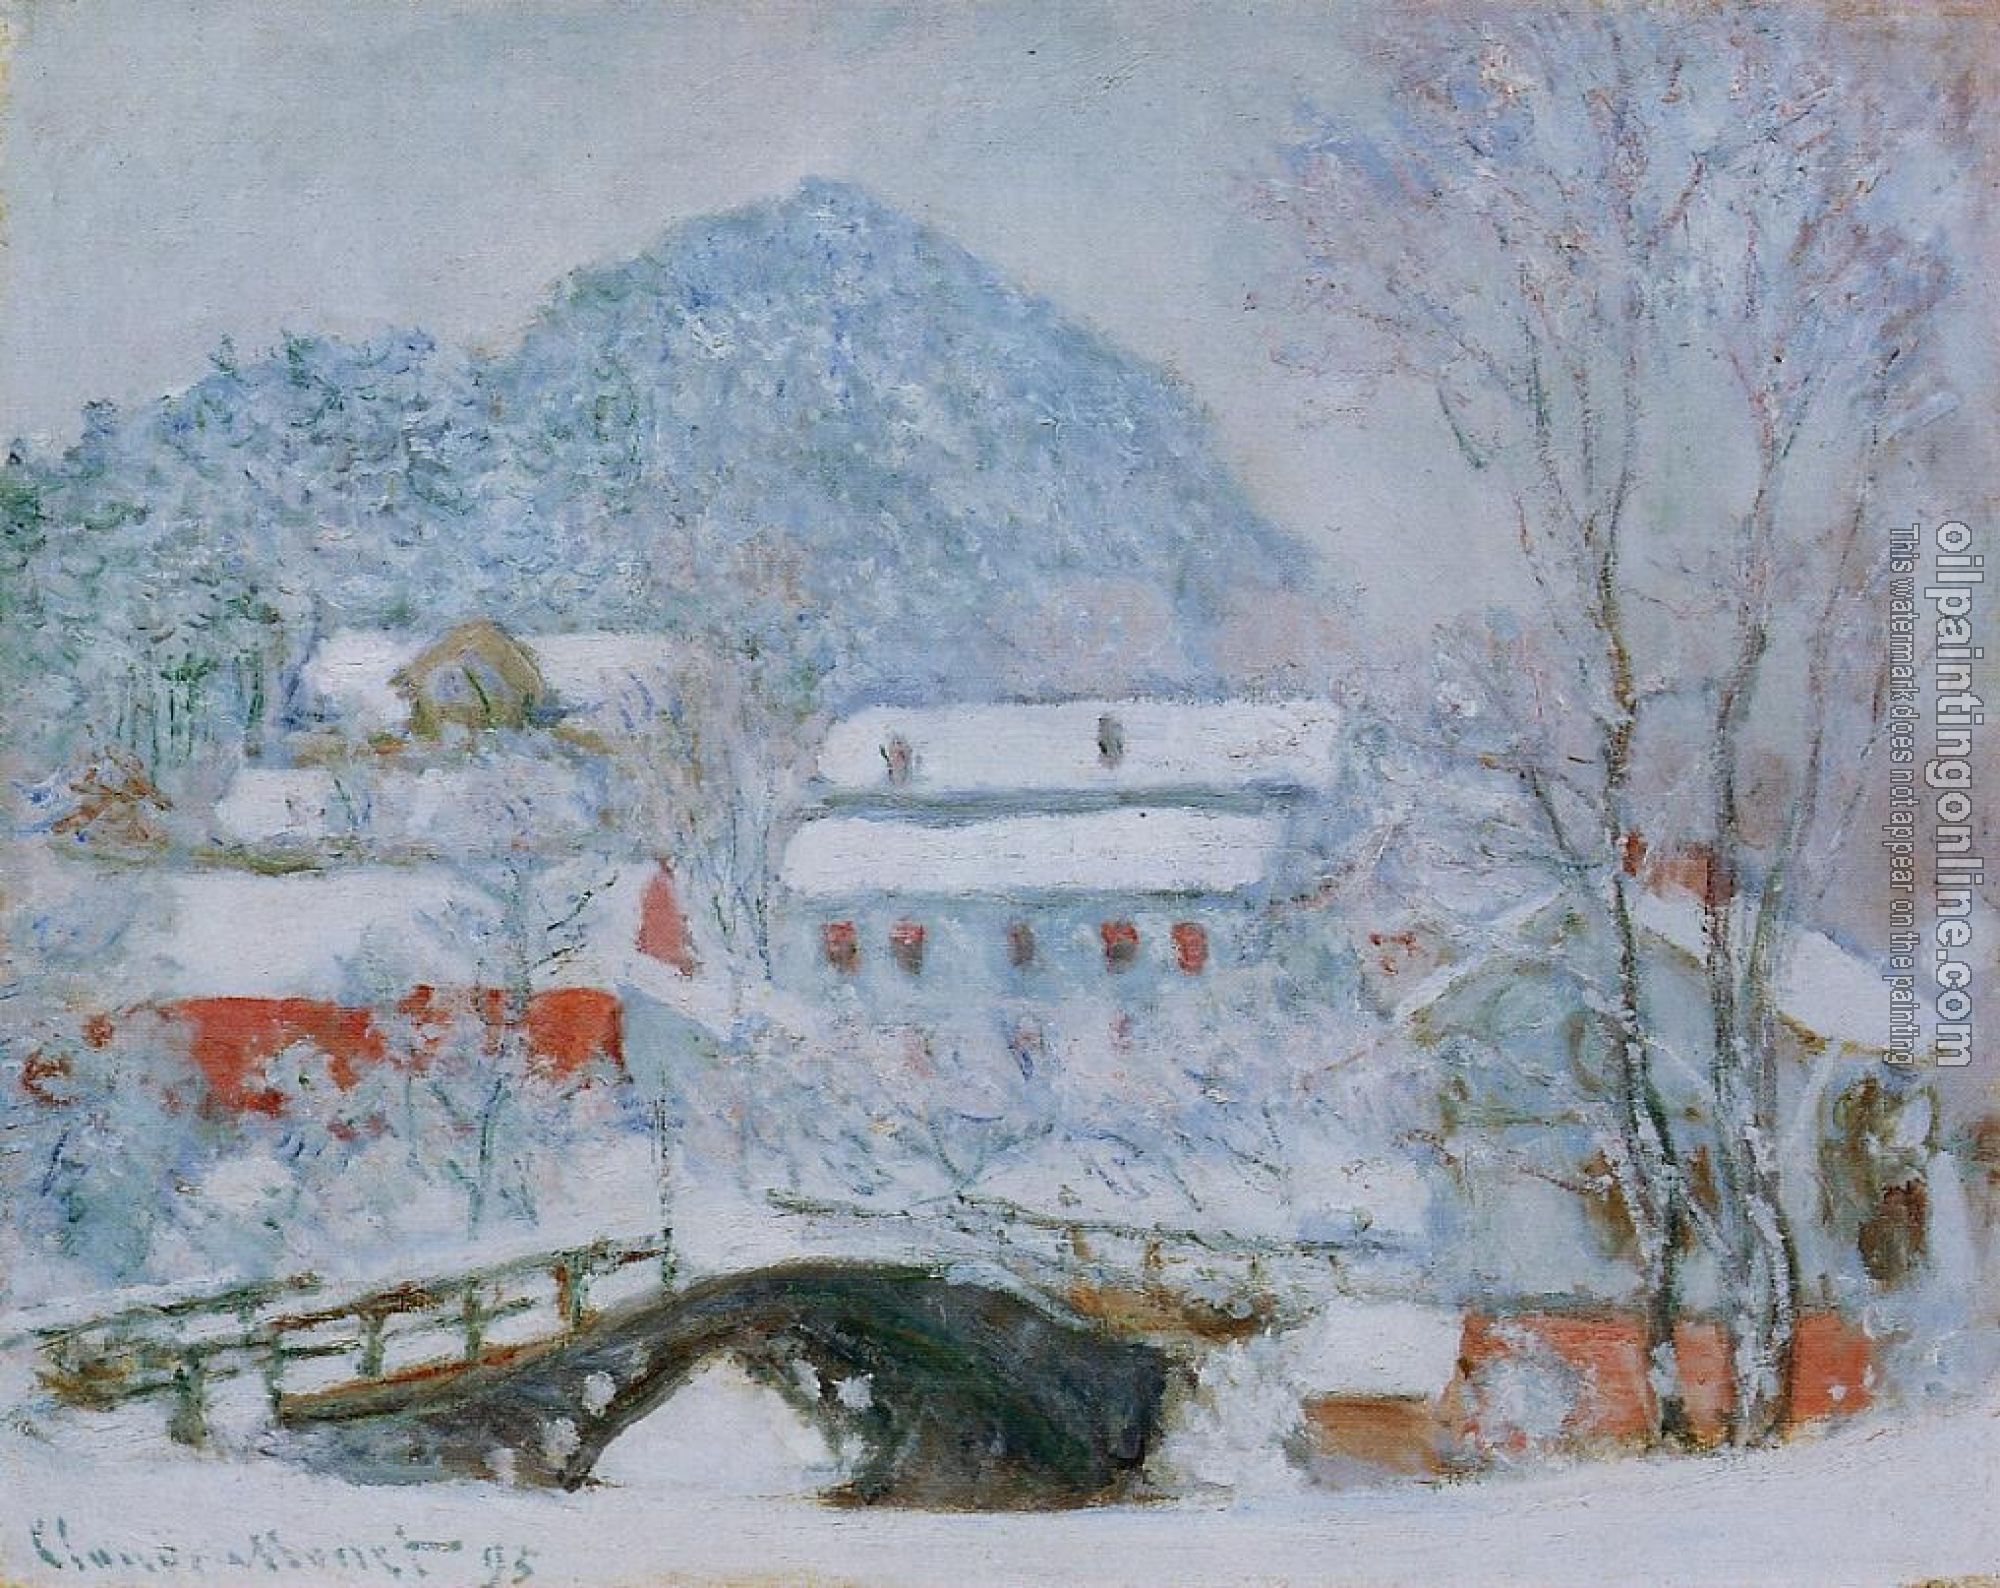 Monet, Claude Oscar - Sandviken Village in the Snow